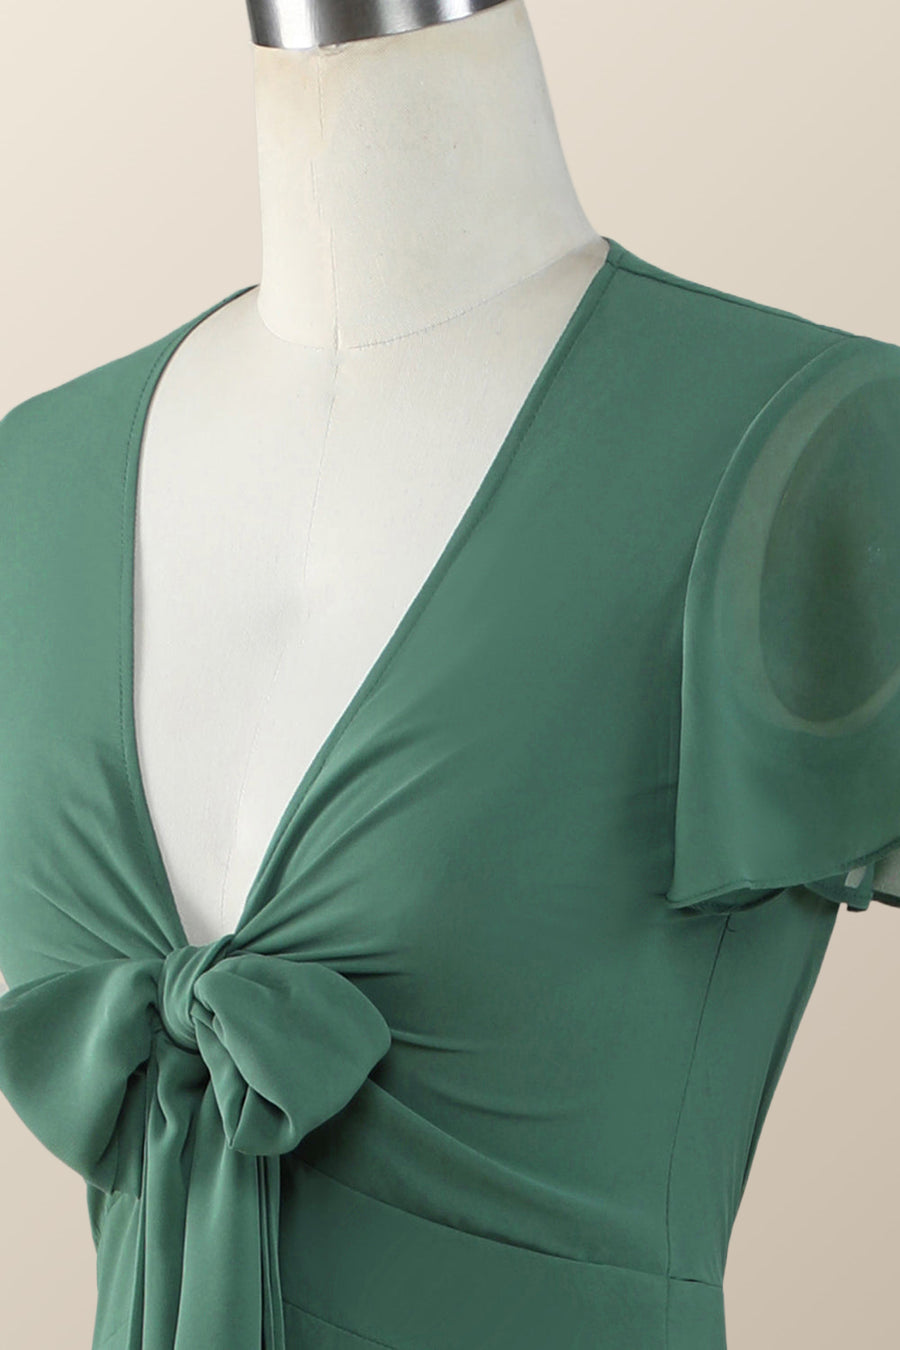 Knot Front Green Chiffon Long Bridesmaid Dress